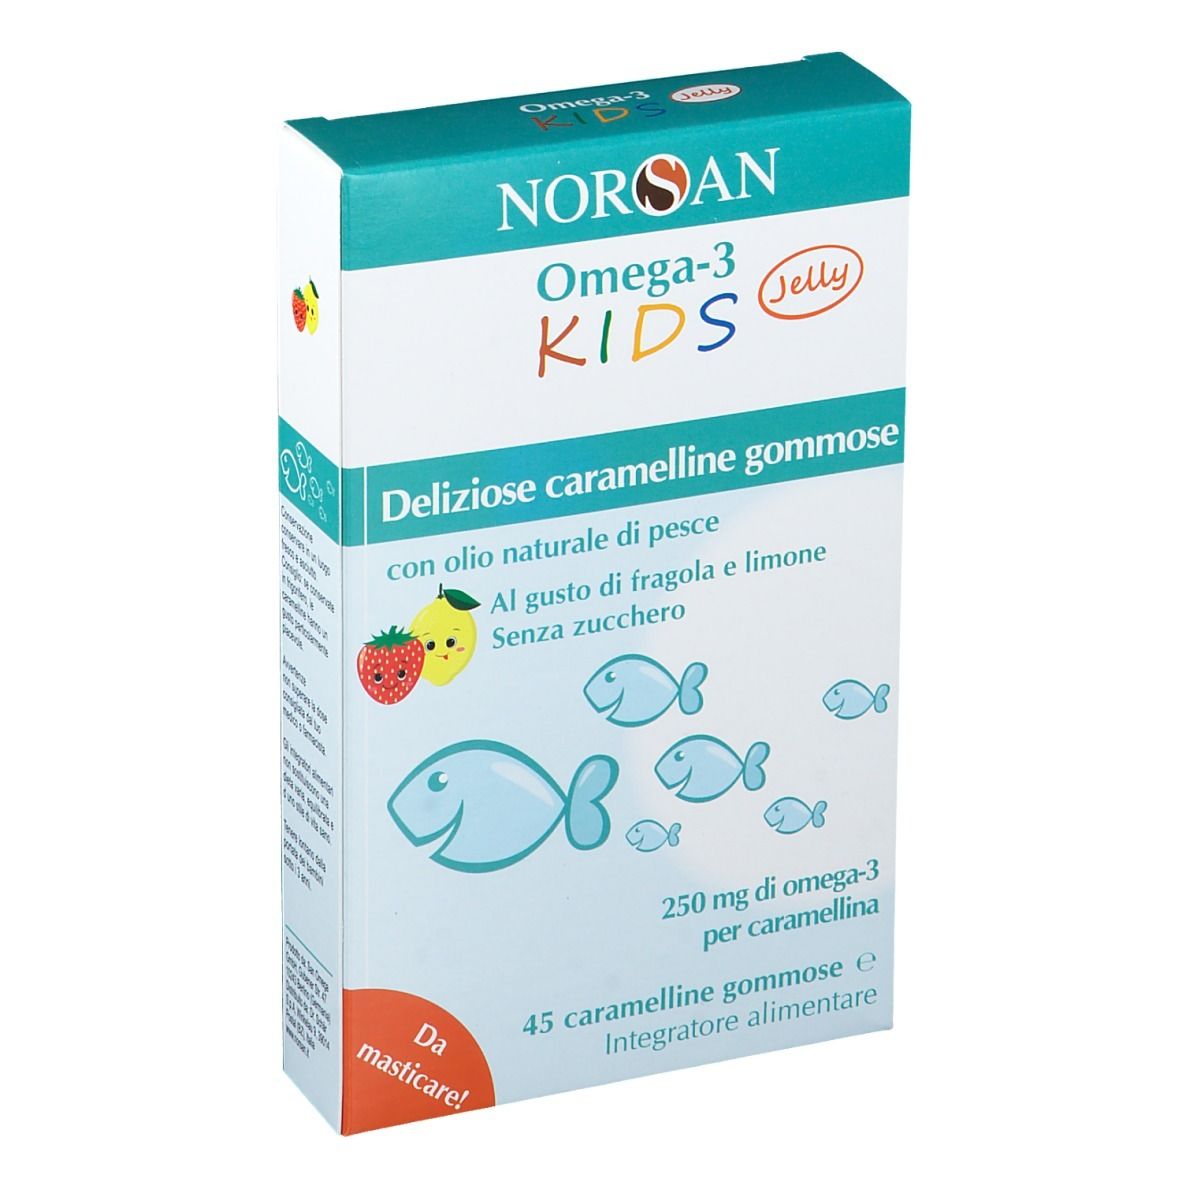 NORSAN Omega 3 Kids Caramelline